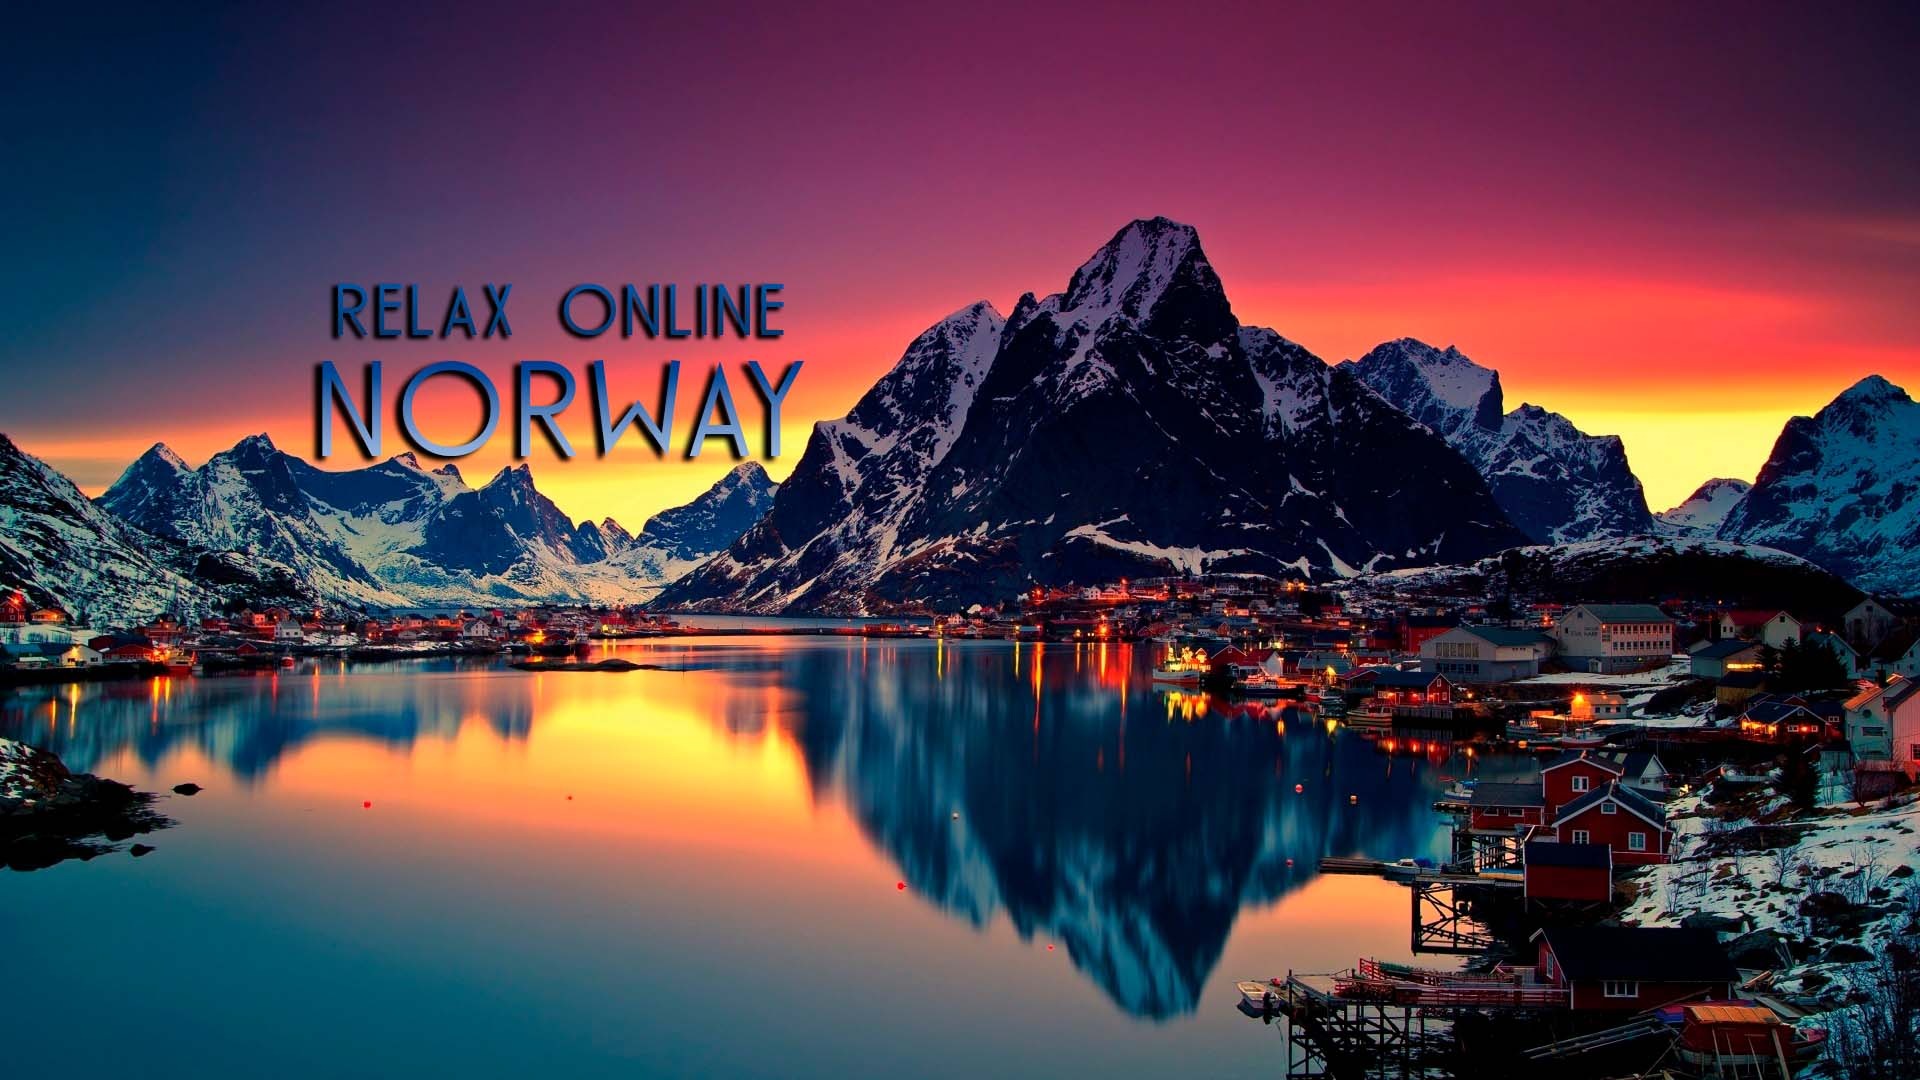 Норвегия ее природа культура и красоты, релаксация онлайн, музыка для сна, путешествие в Норвегии